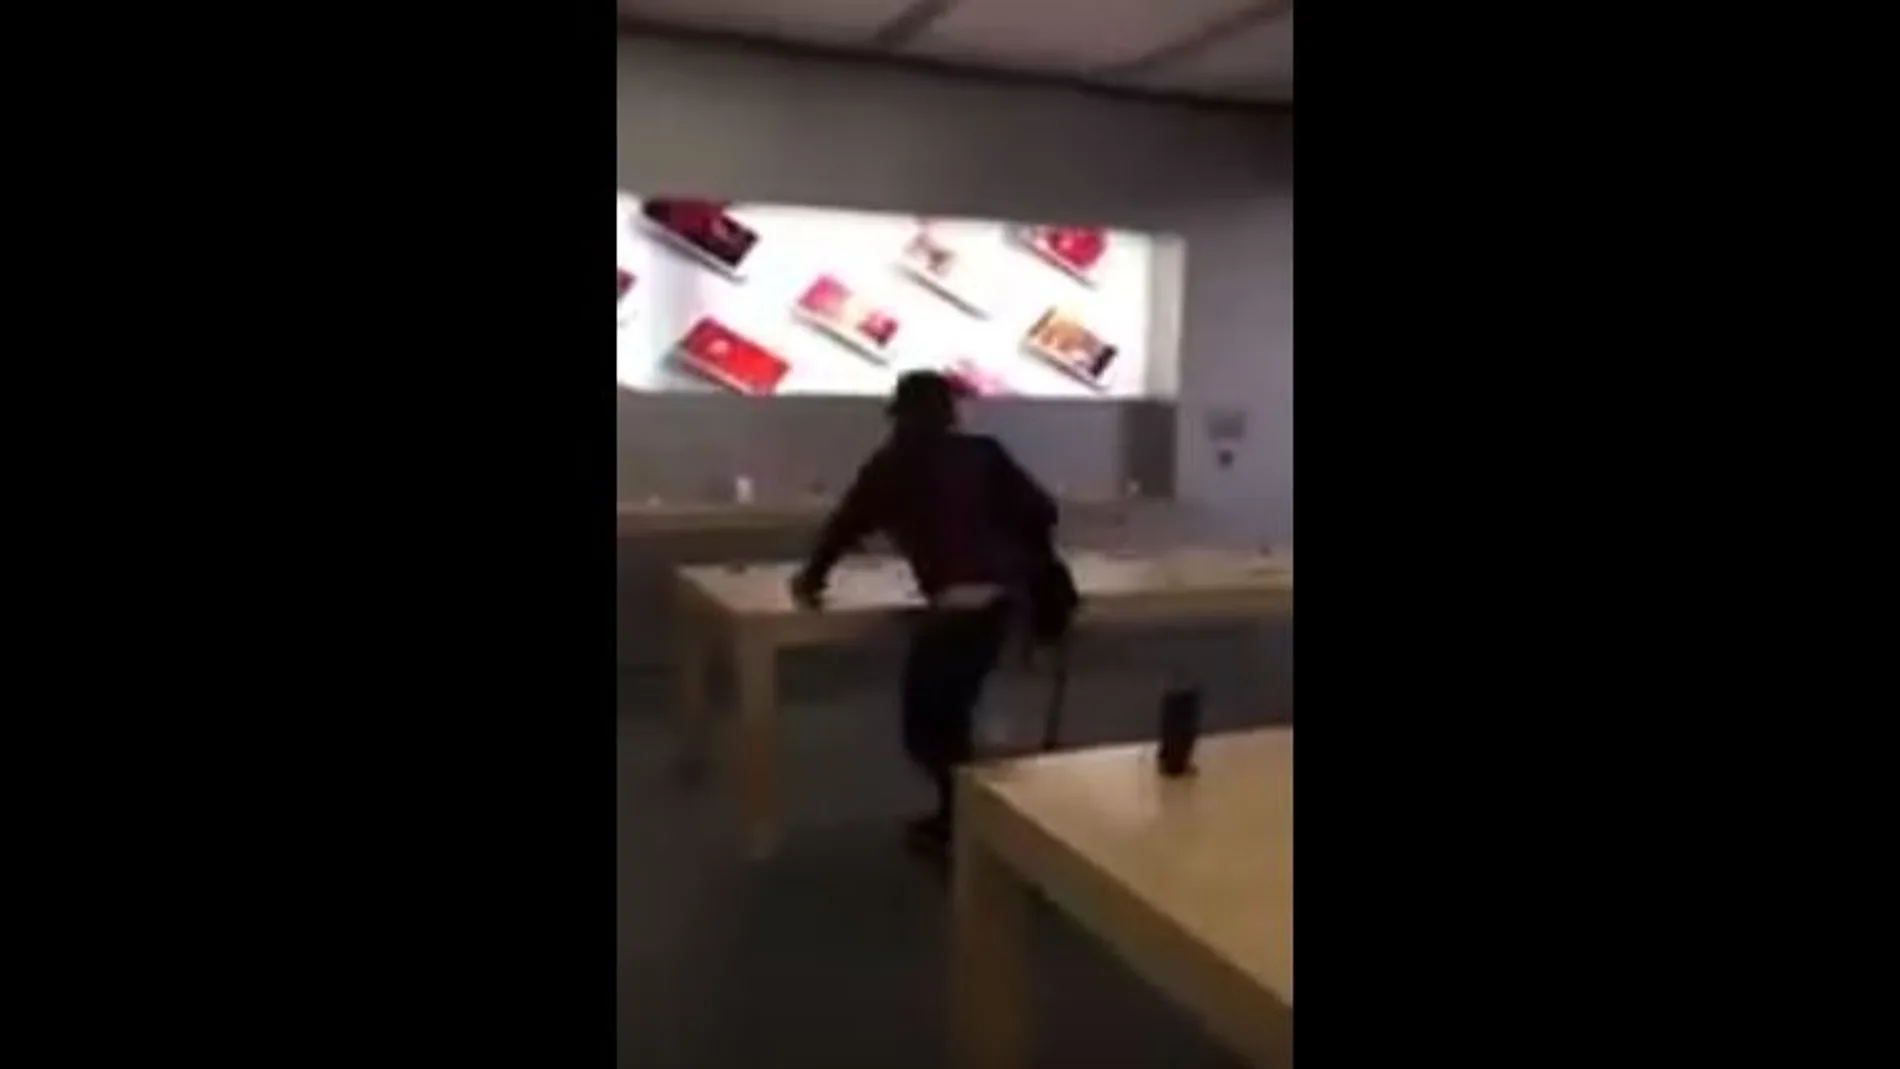 Momento en el que el joven destroza uno de los productos Apple